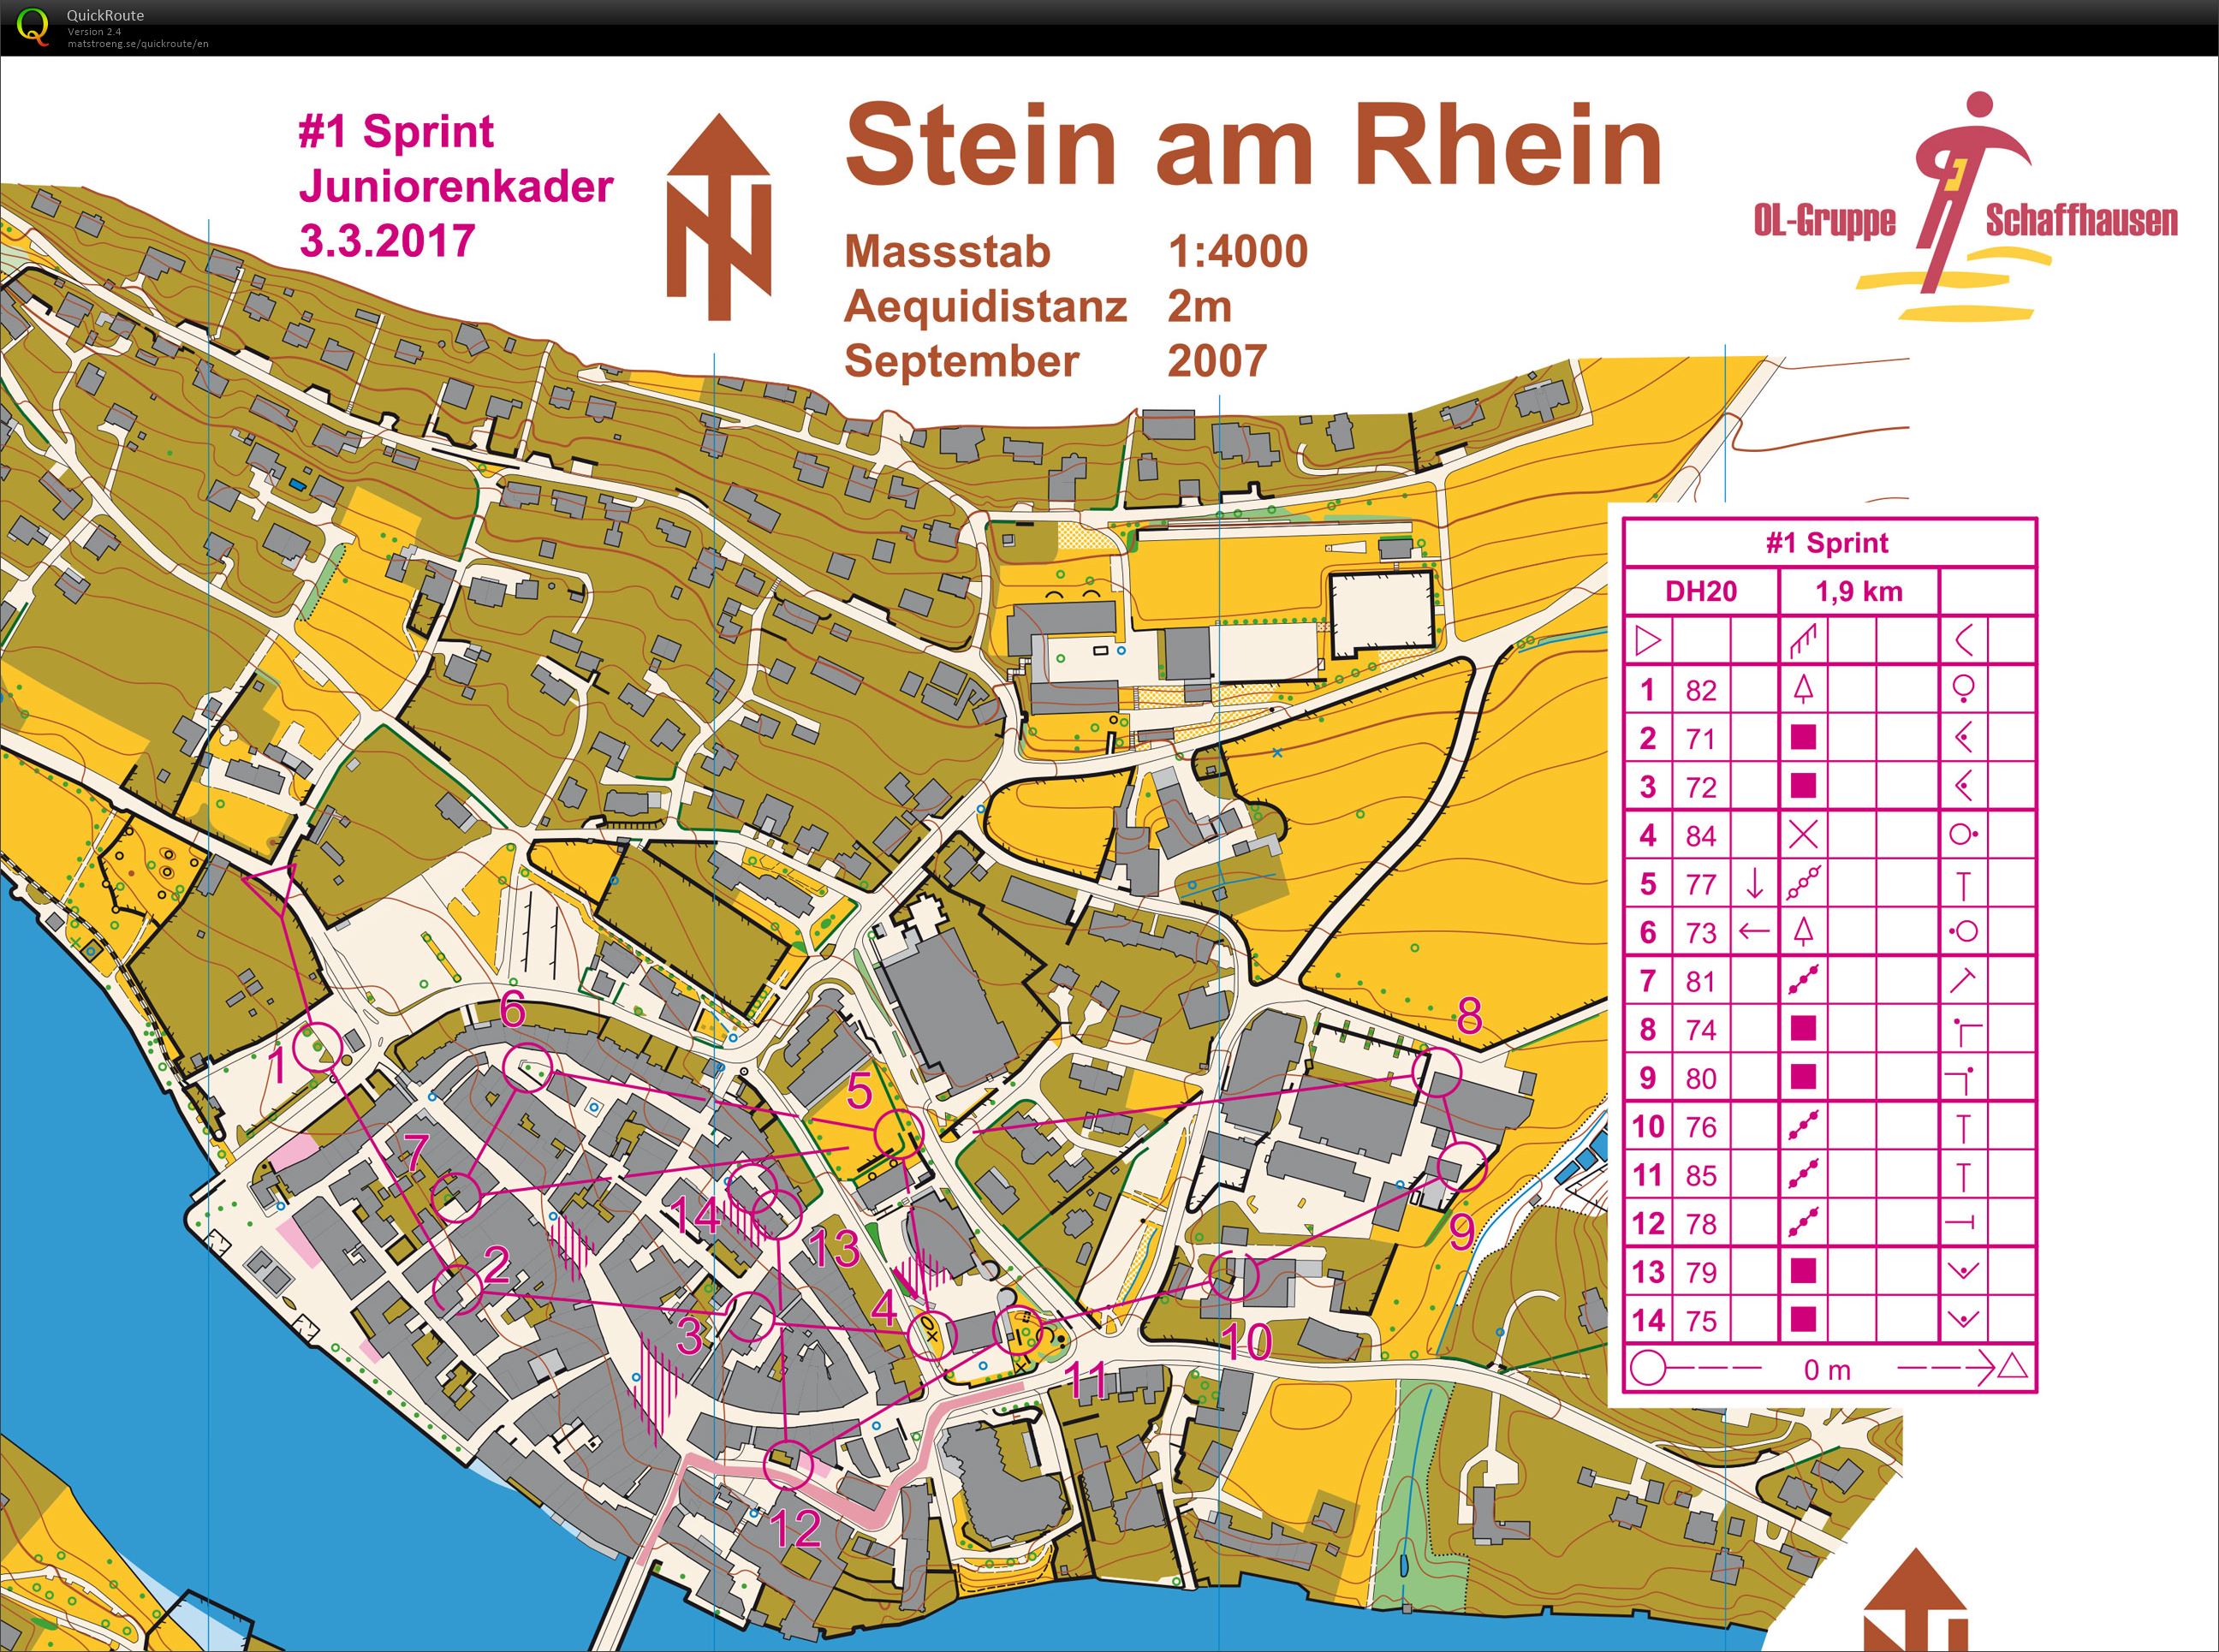 Stein am Rhein (24/07/2020)